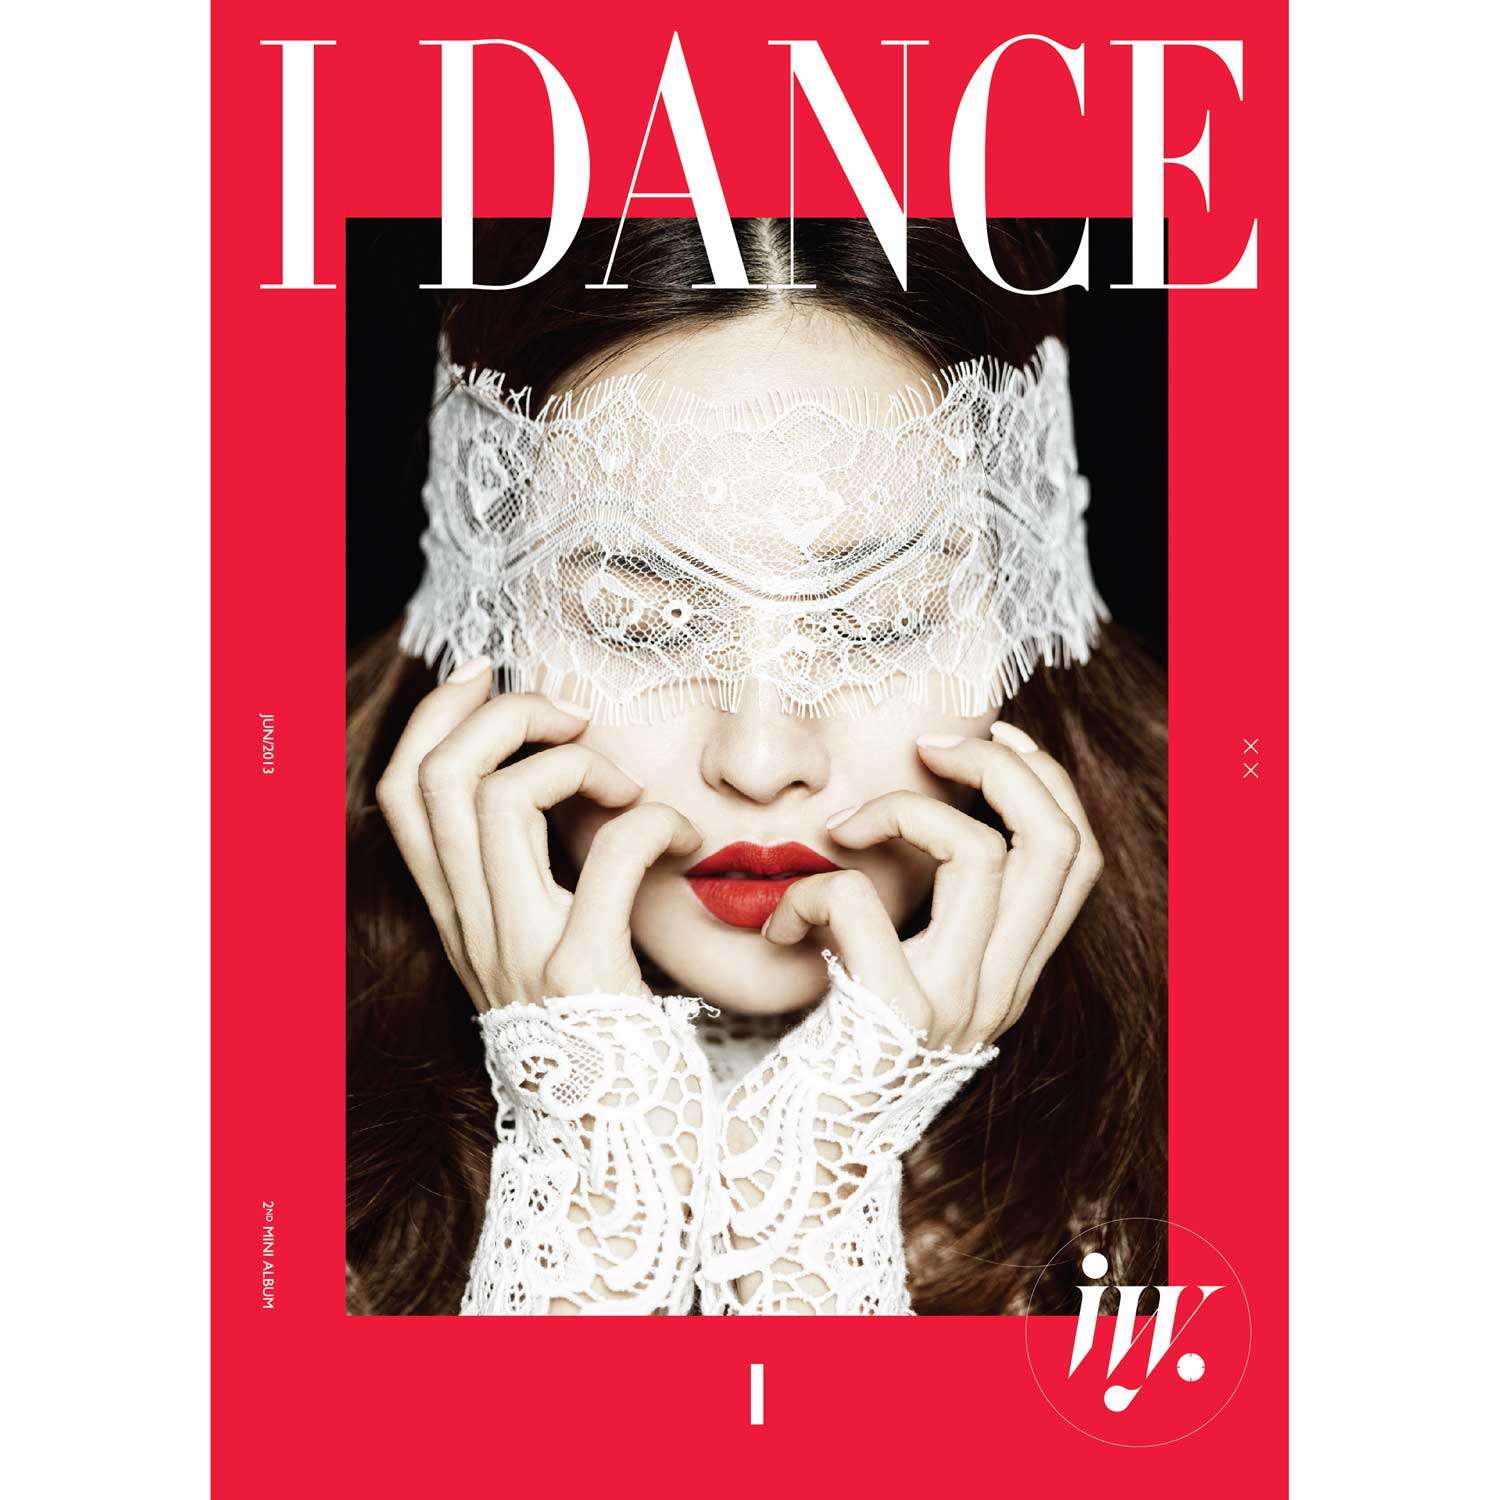 IVY - I Dance [2nd Mini Album]